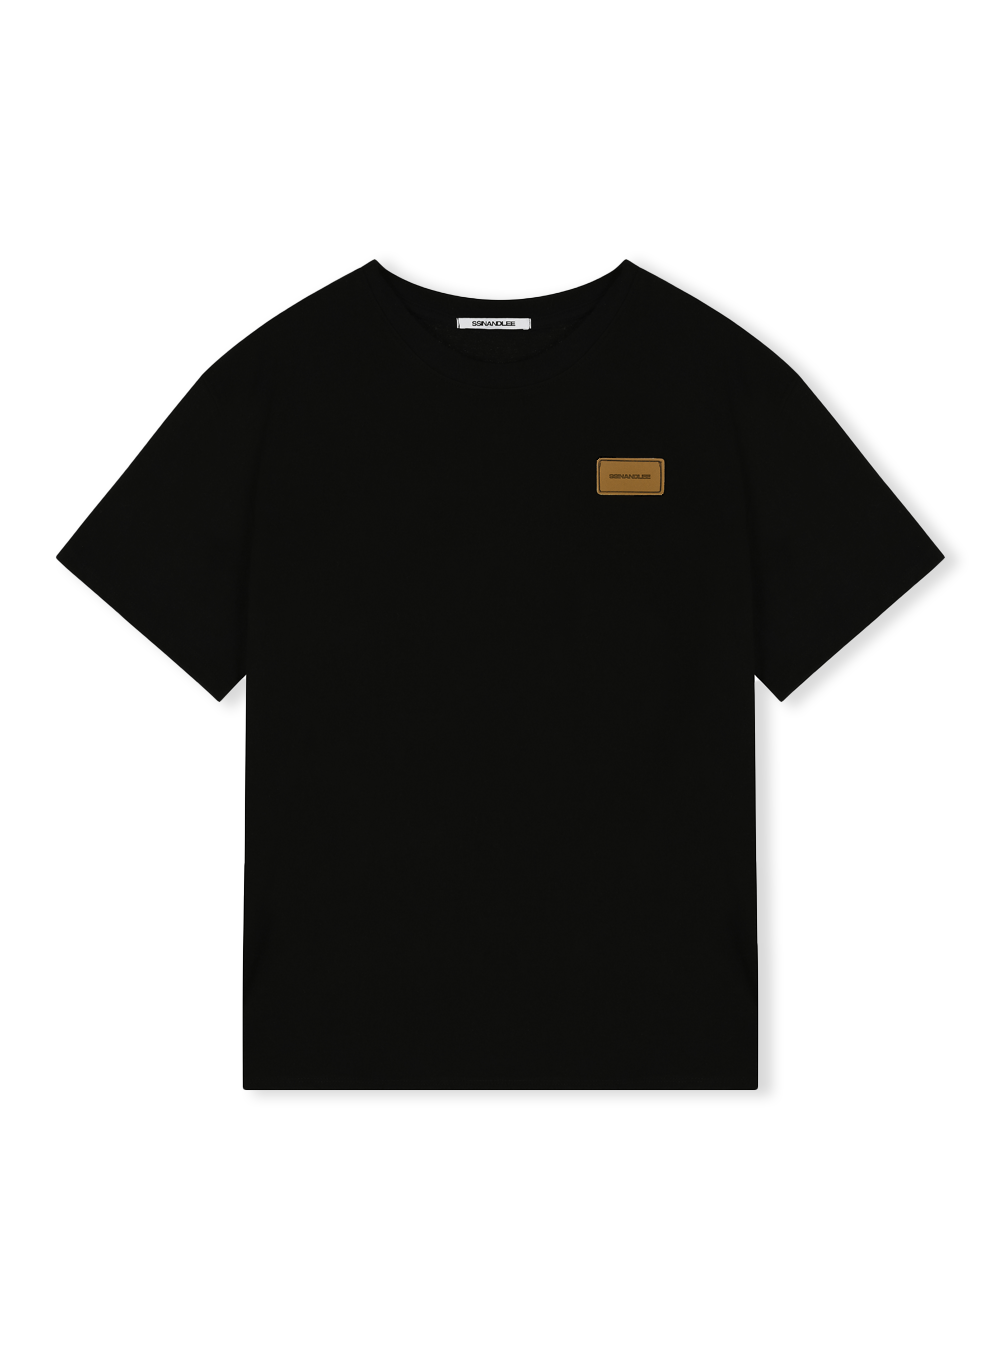 에센셜 레더 라벨 티셔츠 블랙Essential leather label T-shirt black